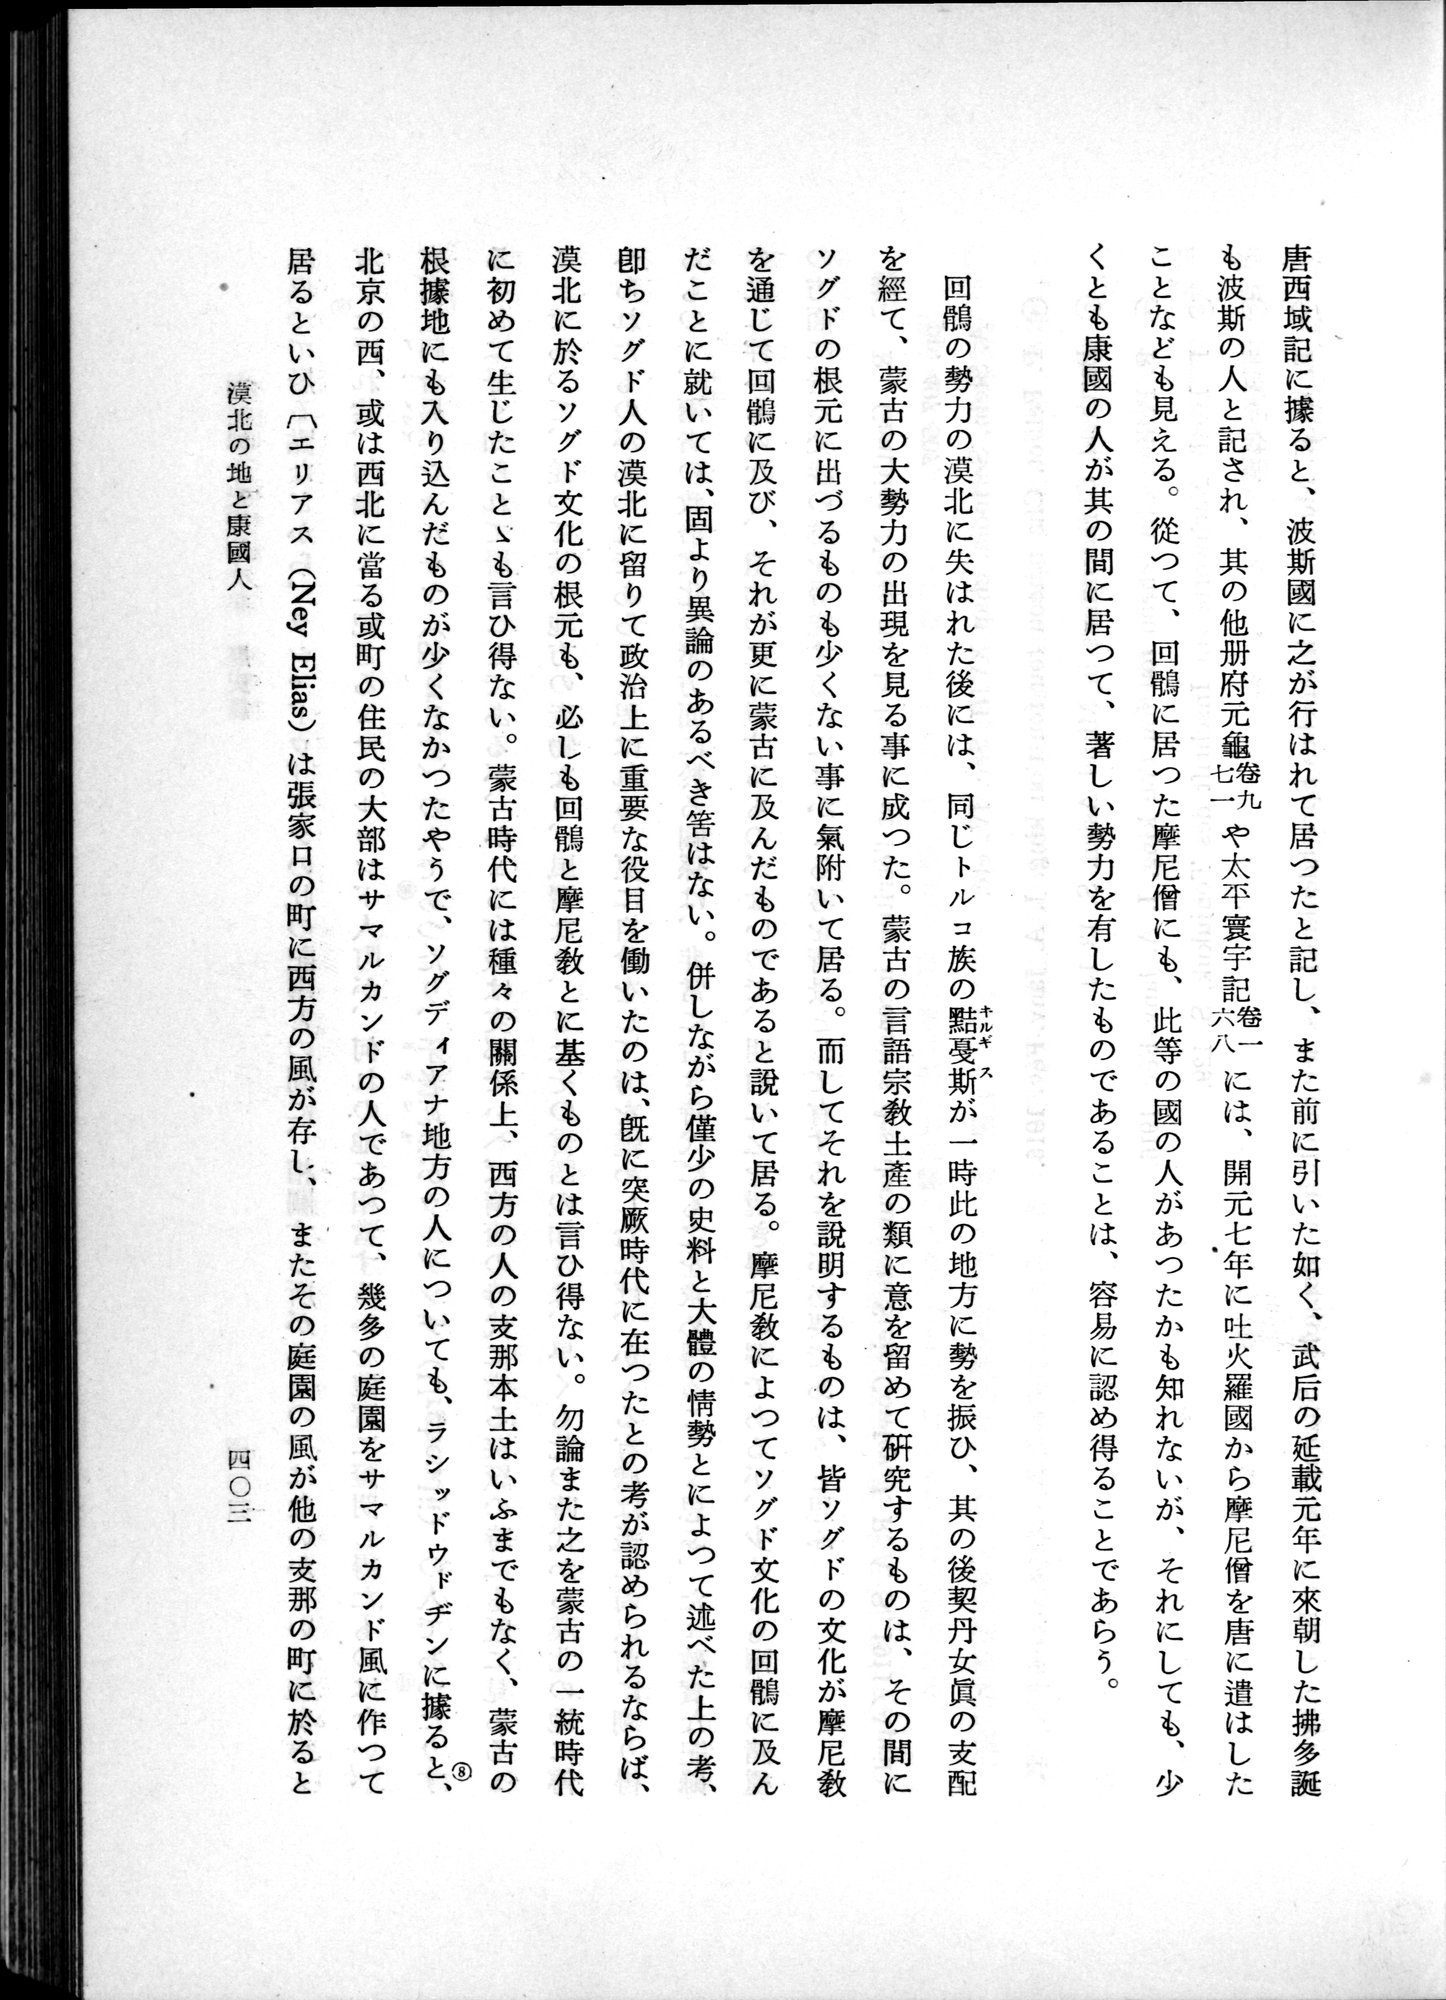 羽田博士史学論文集 : vol.1 / Page 441 (Grayscale High Resolution Image)